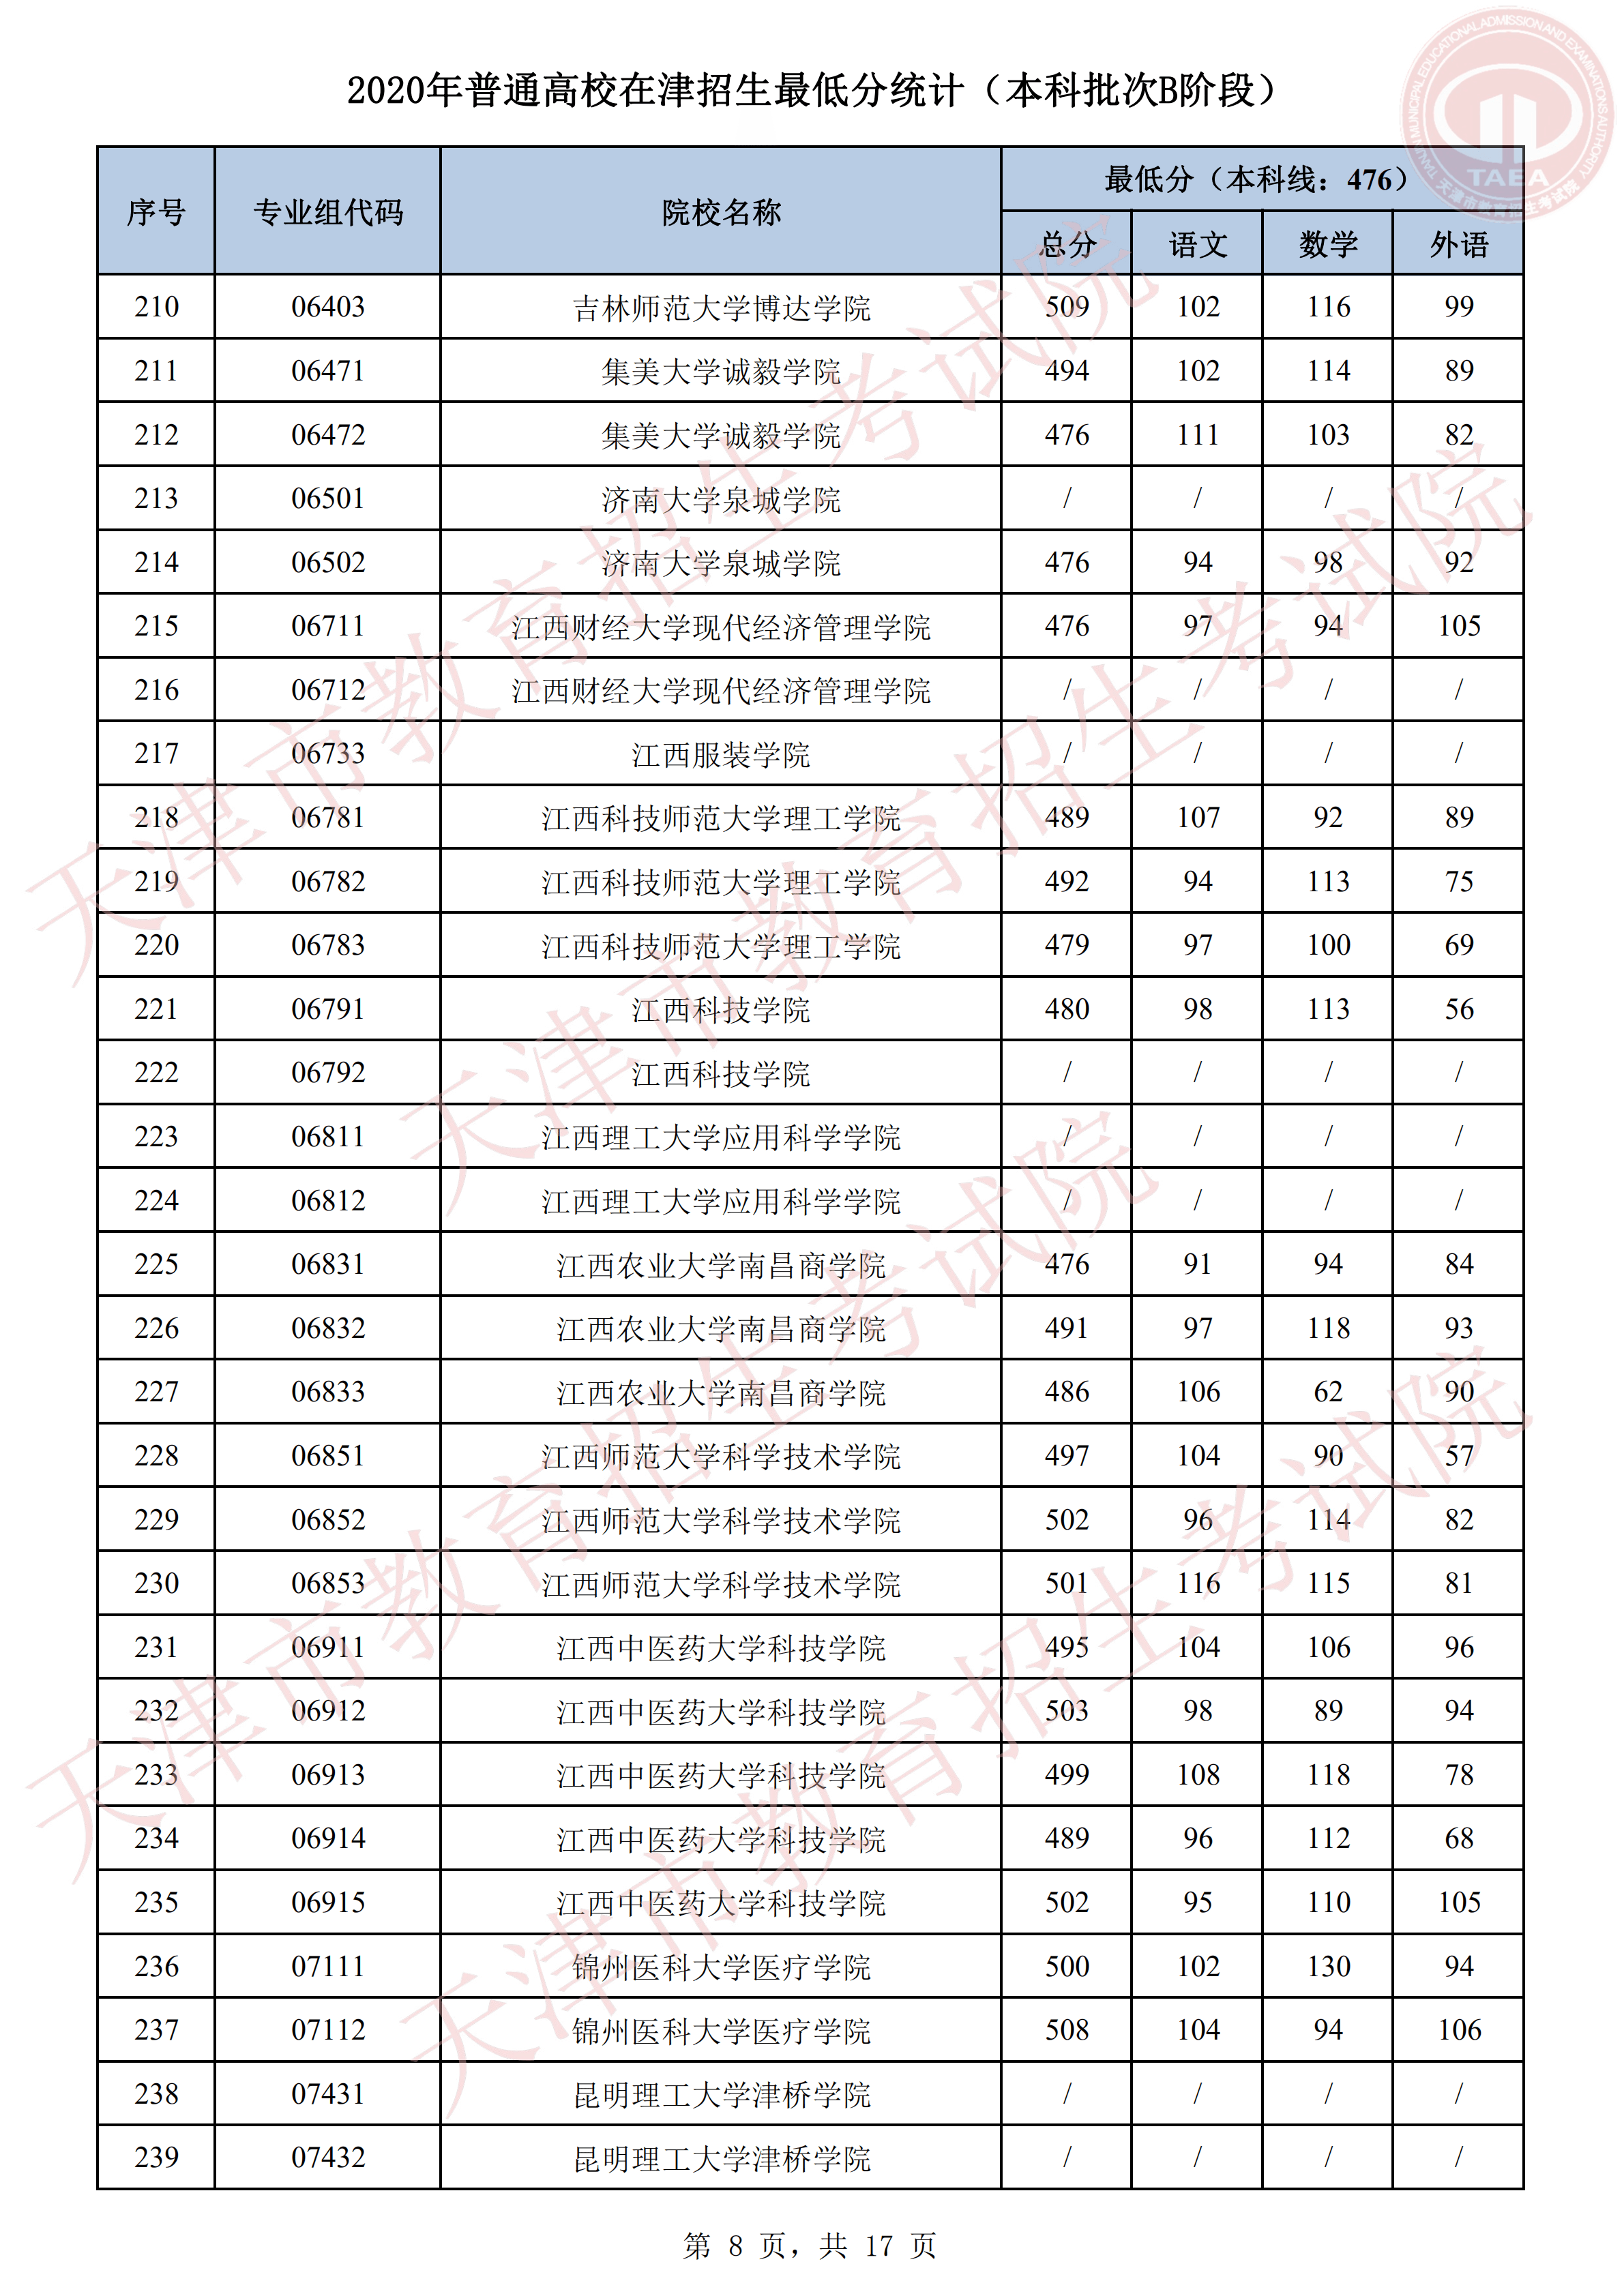 2020年天津本科批录取分数线【B阶段】